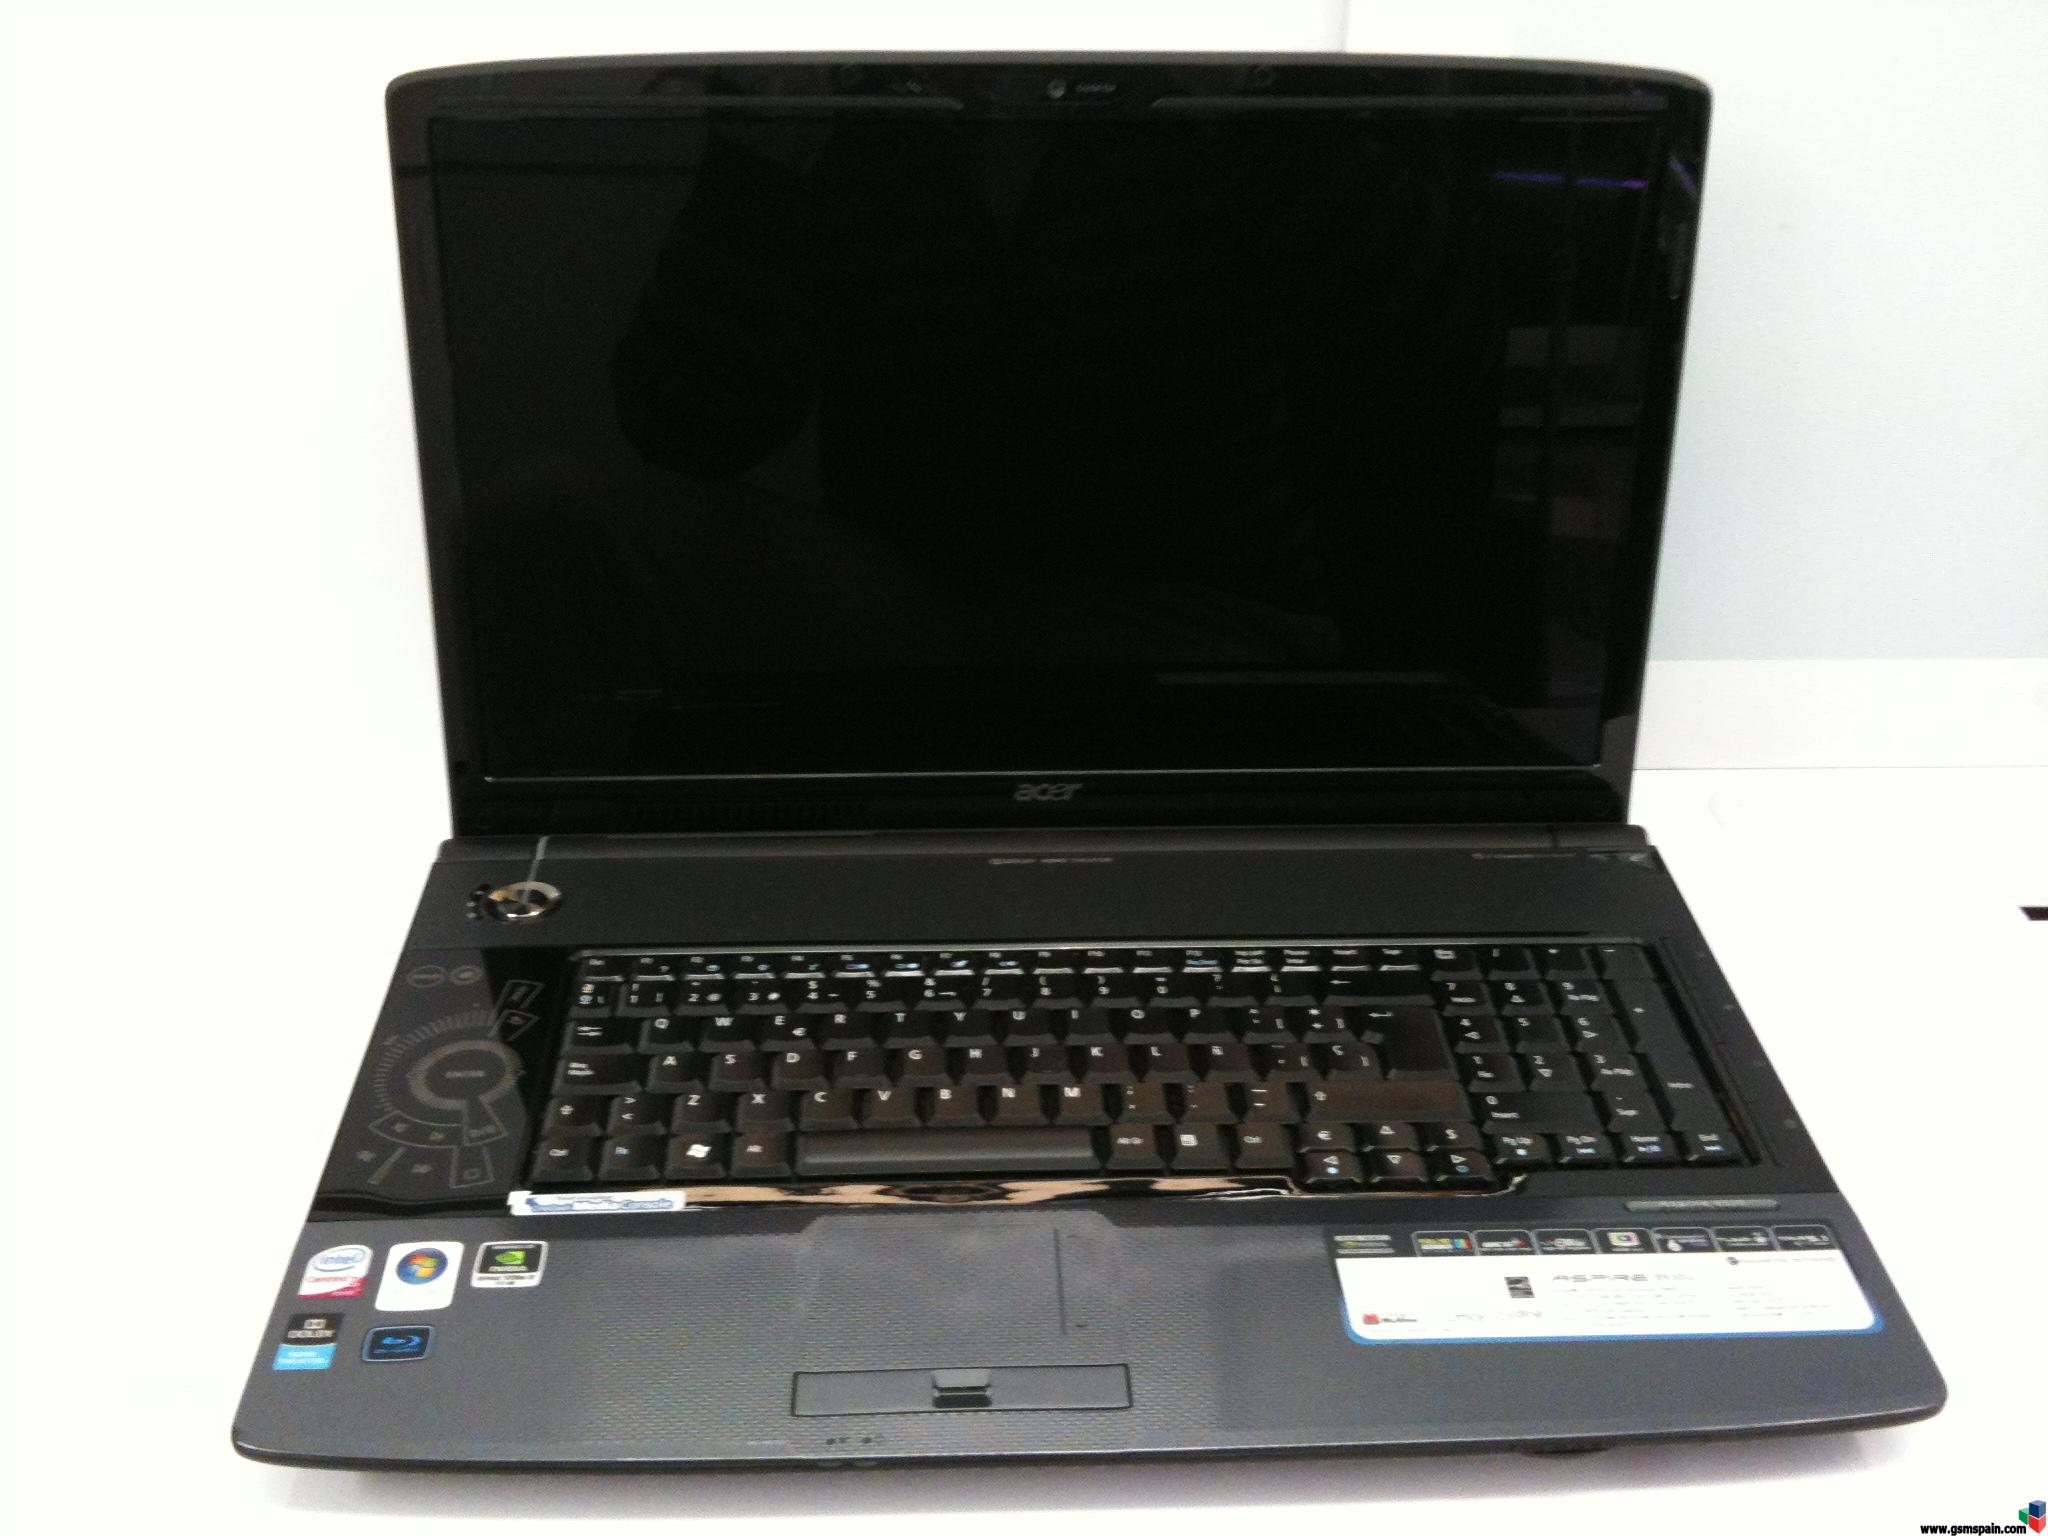 Venta super portatil Acer 8930G a super precio